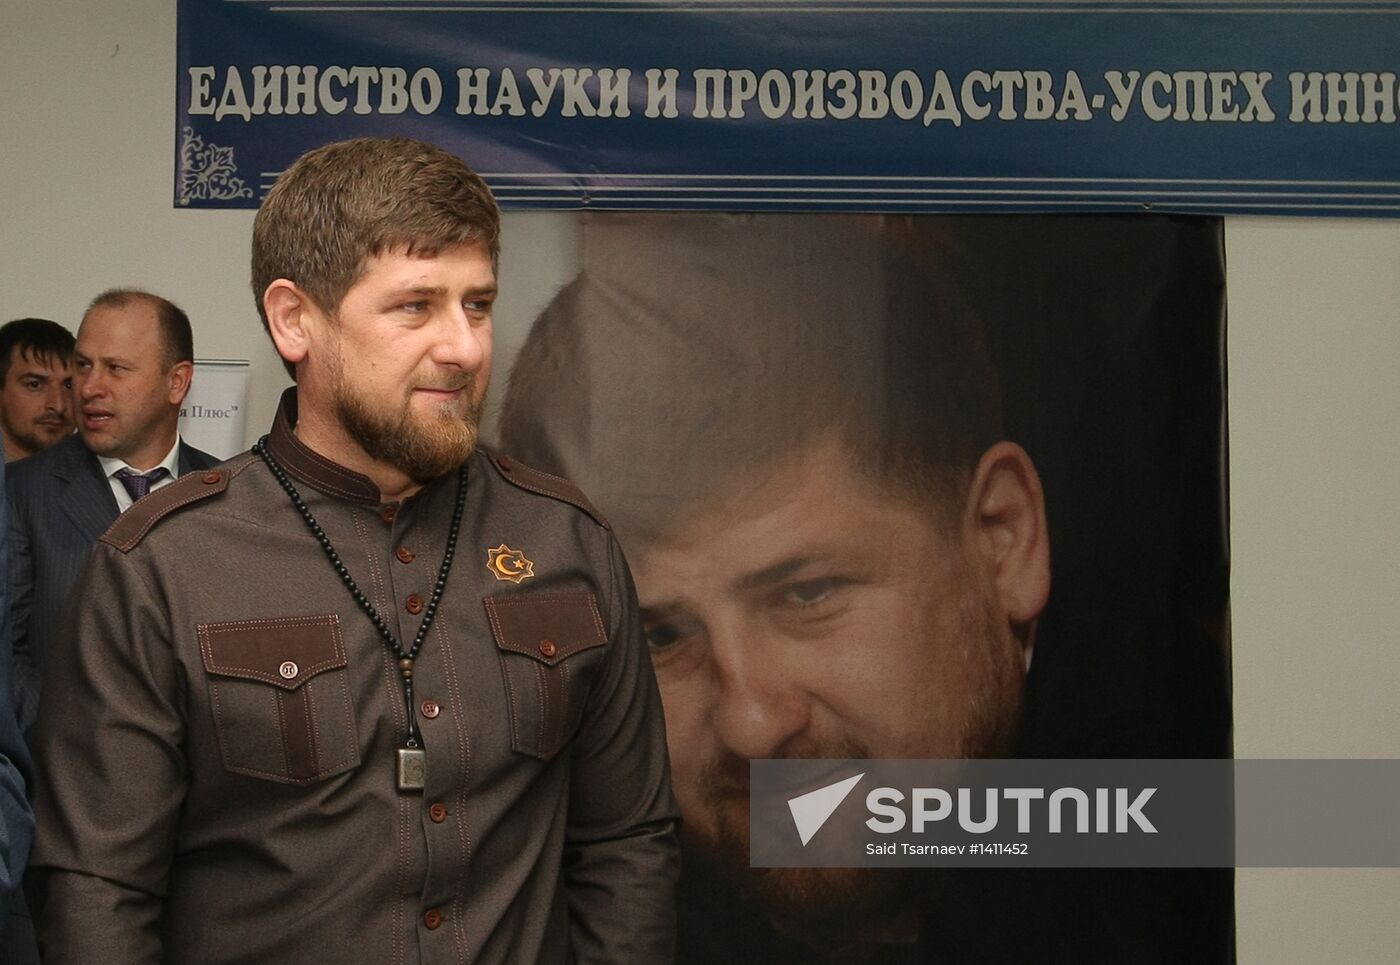 Chechen leader Ramzan Kadyrov visits JSC Energiya Plyus